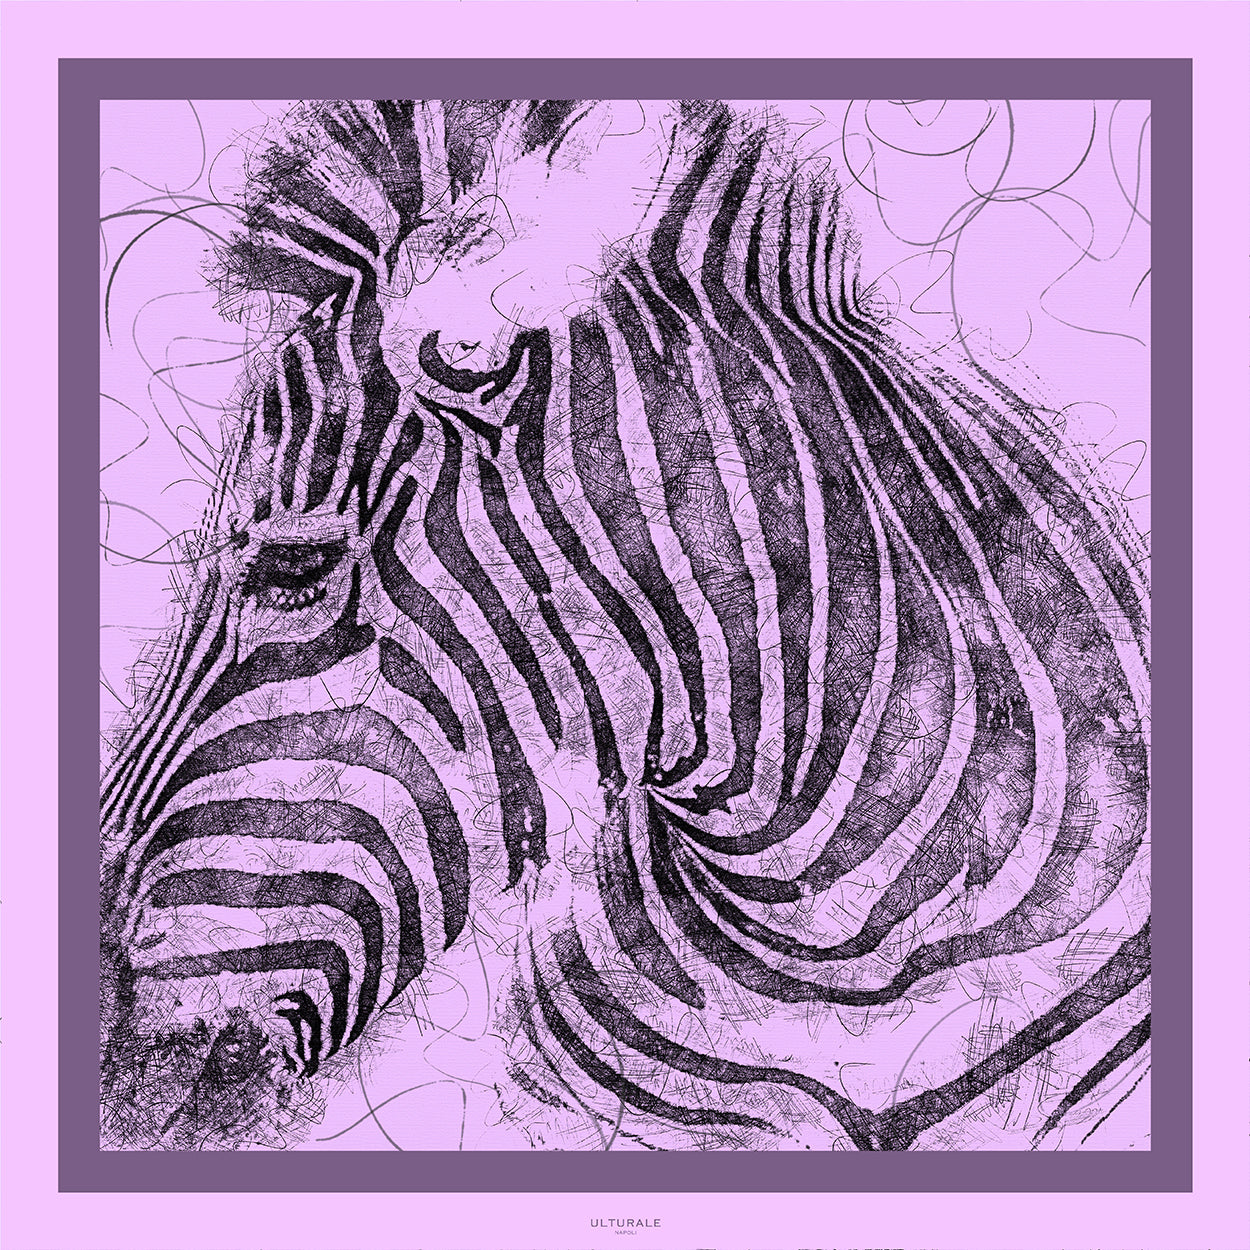 Zebra Scarf